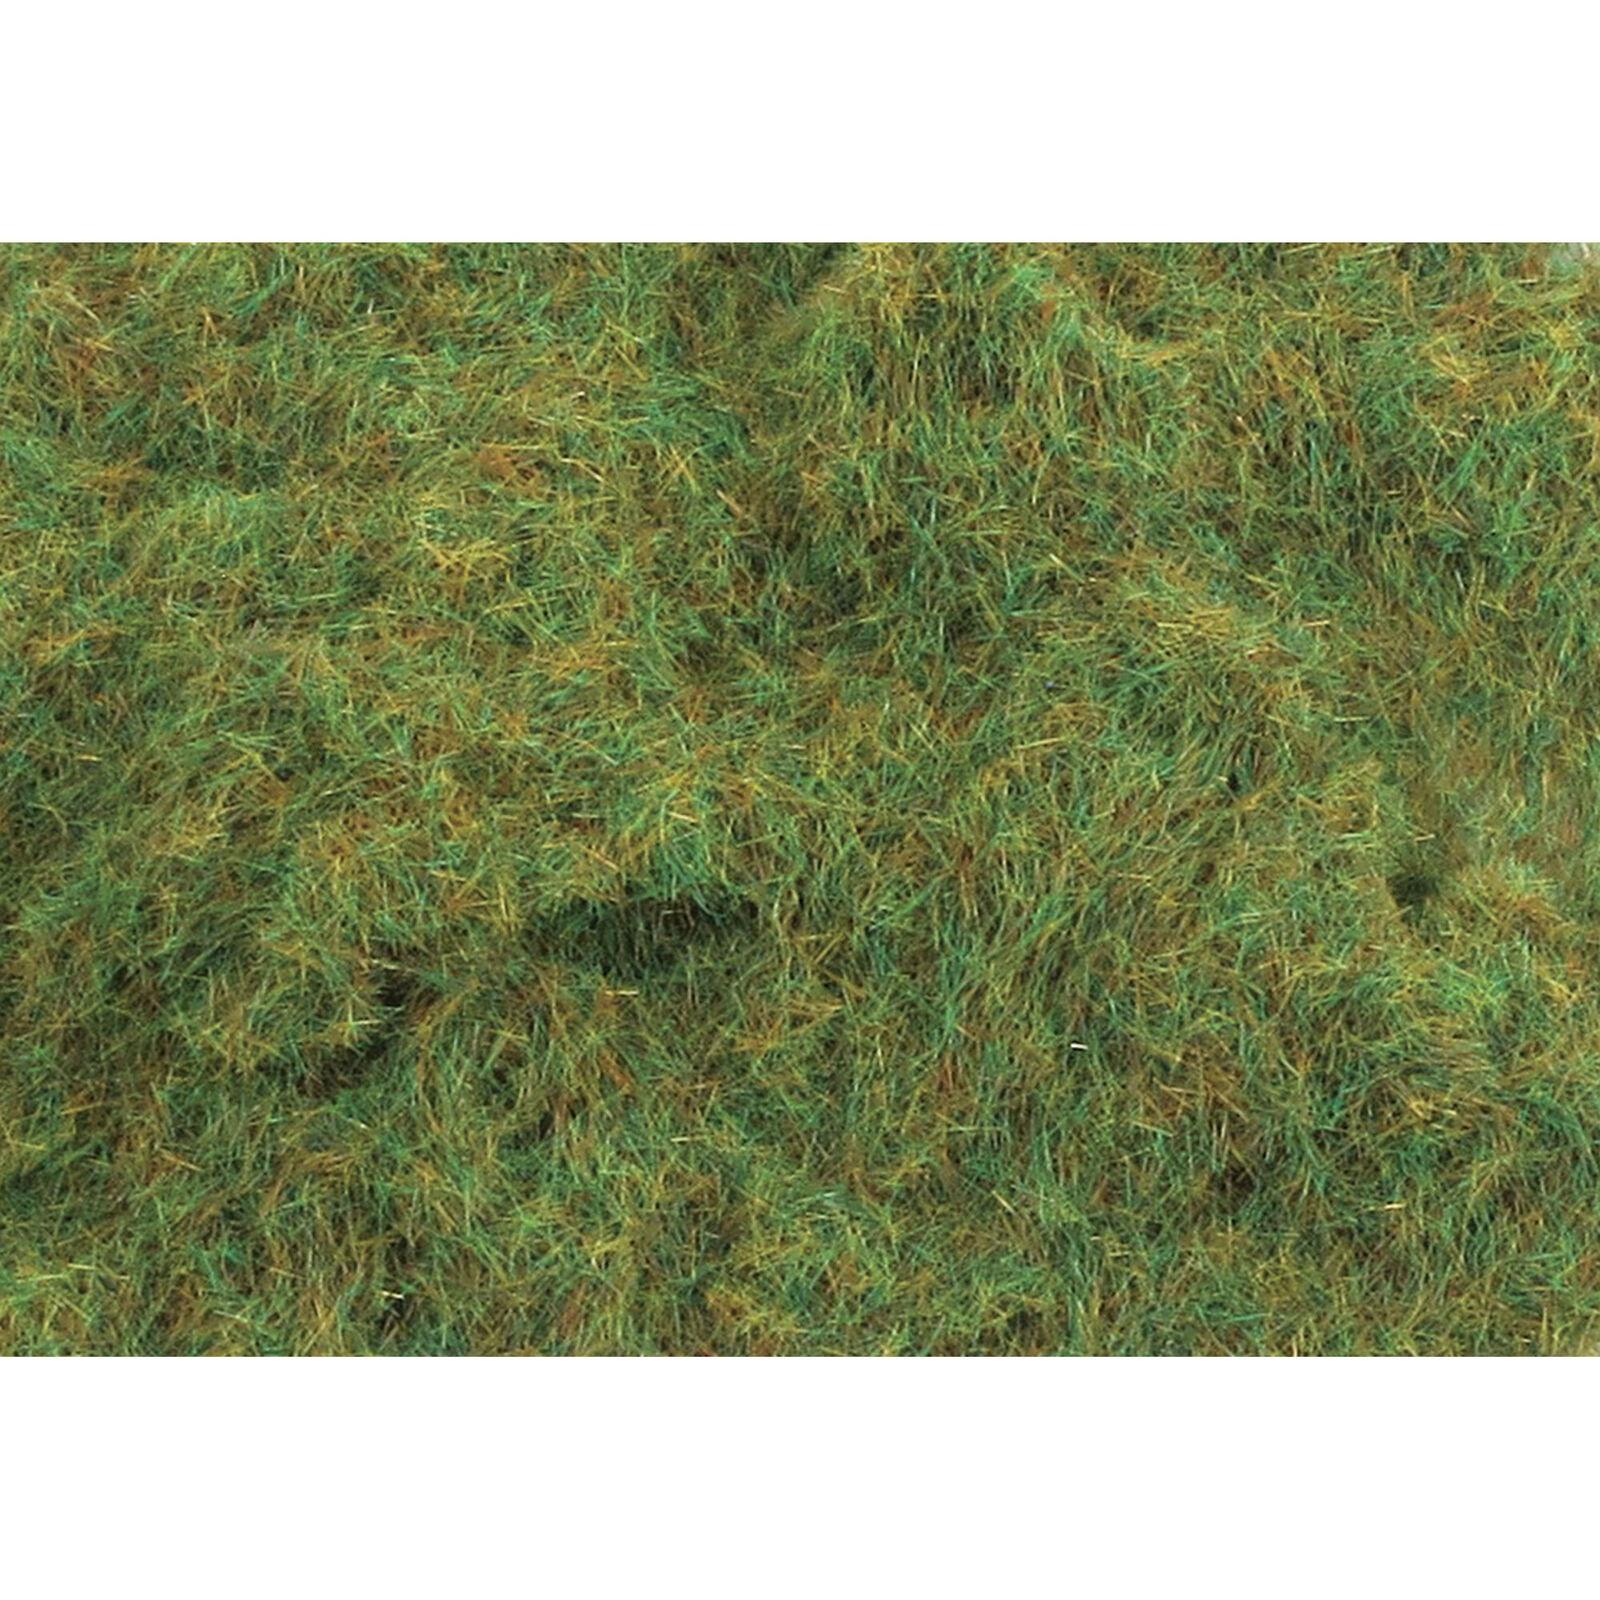 4mm 3 16" Static Grass Summer 100g 3.5oz